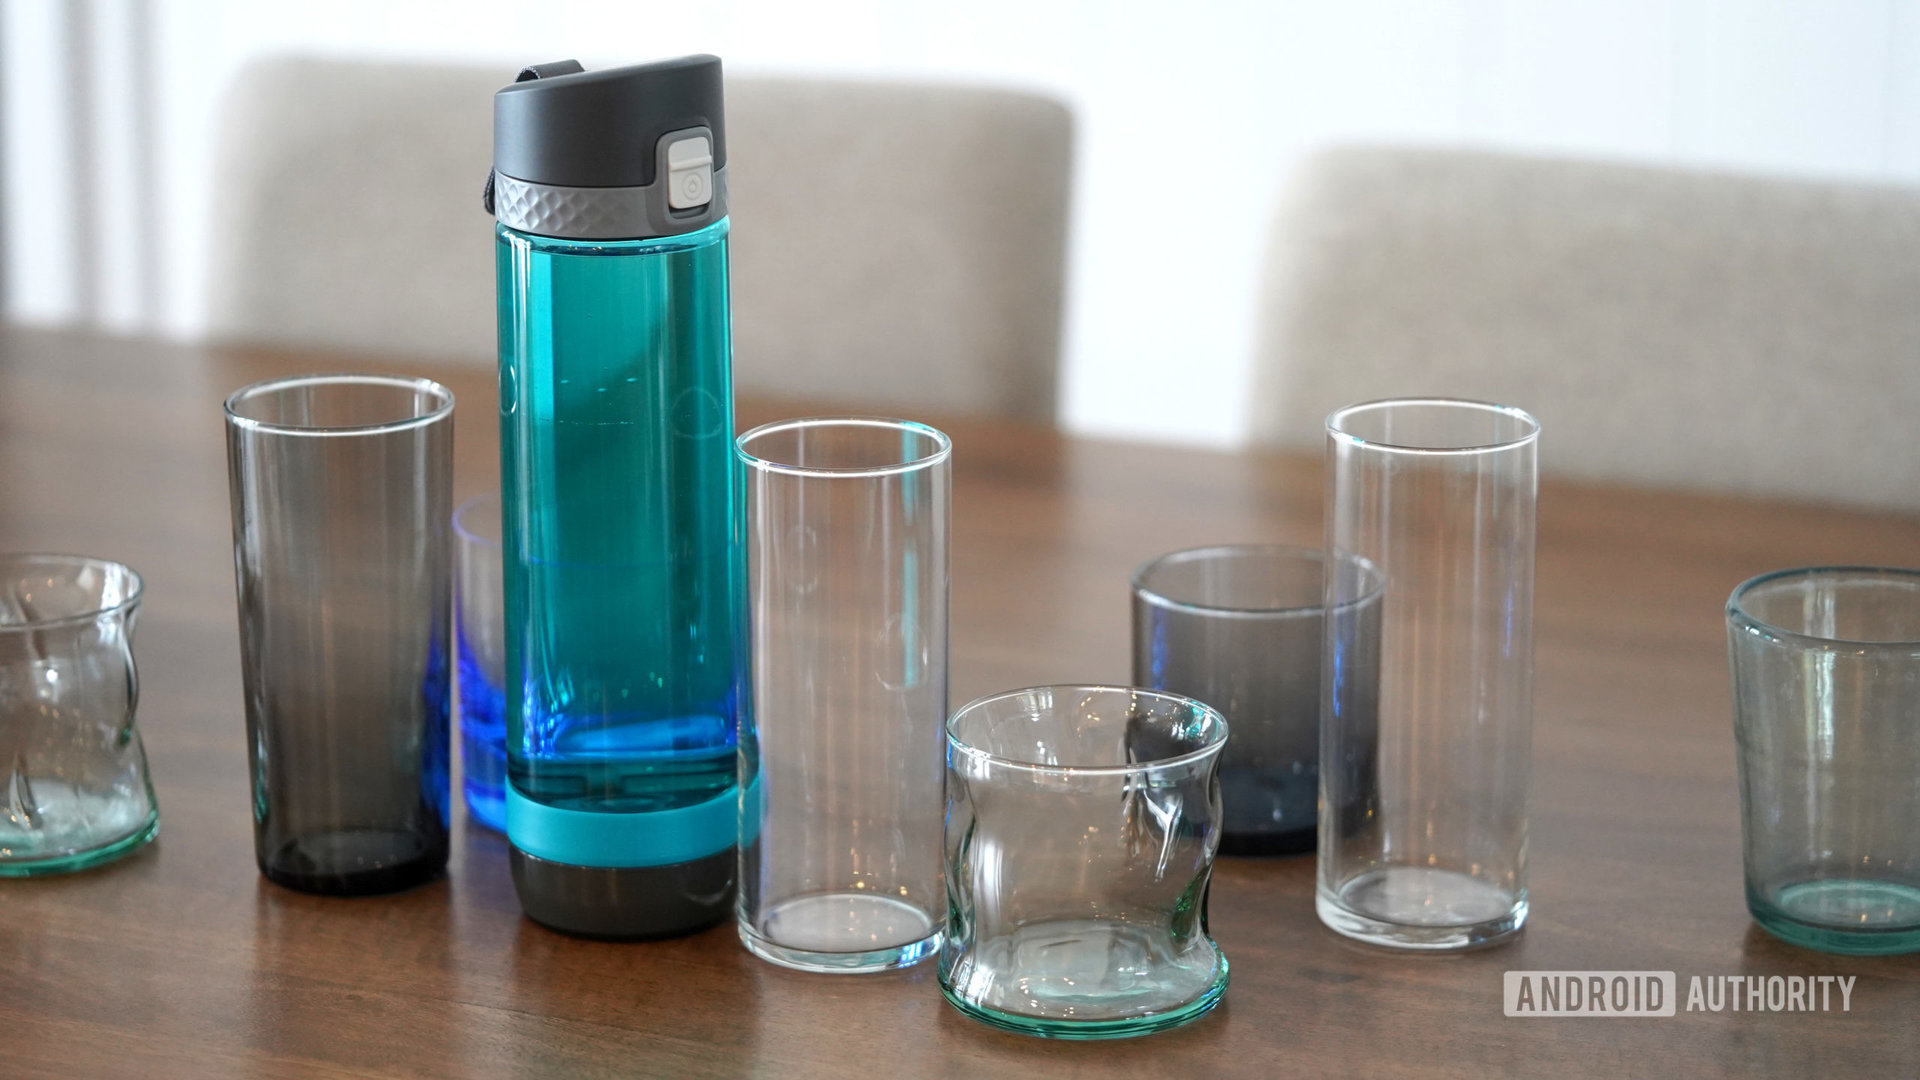 Una botella de agua inteligente se encuentra entre vasos de agua vacíos.